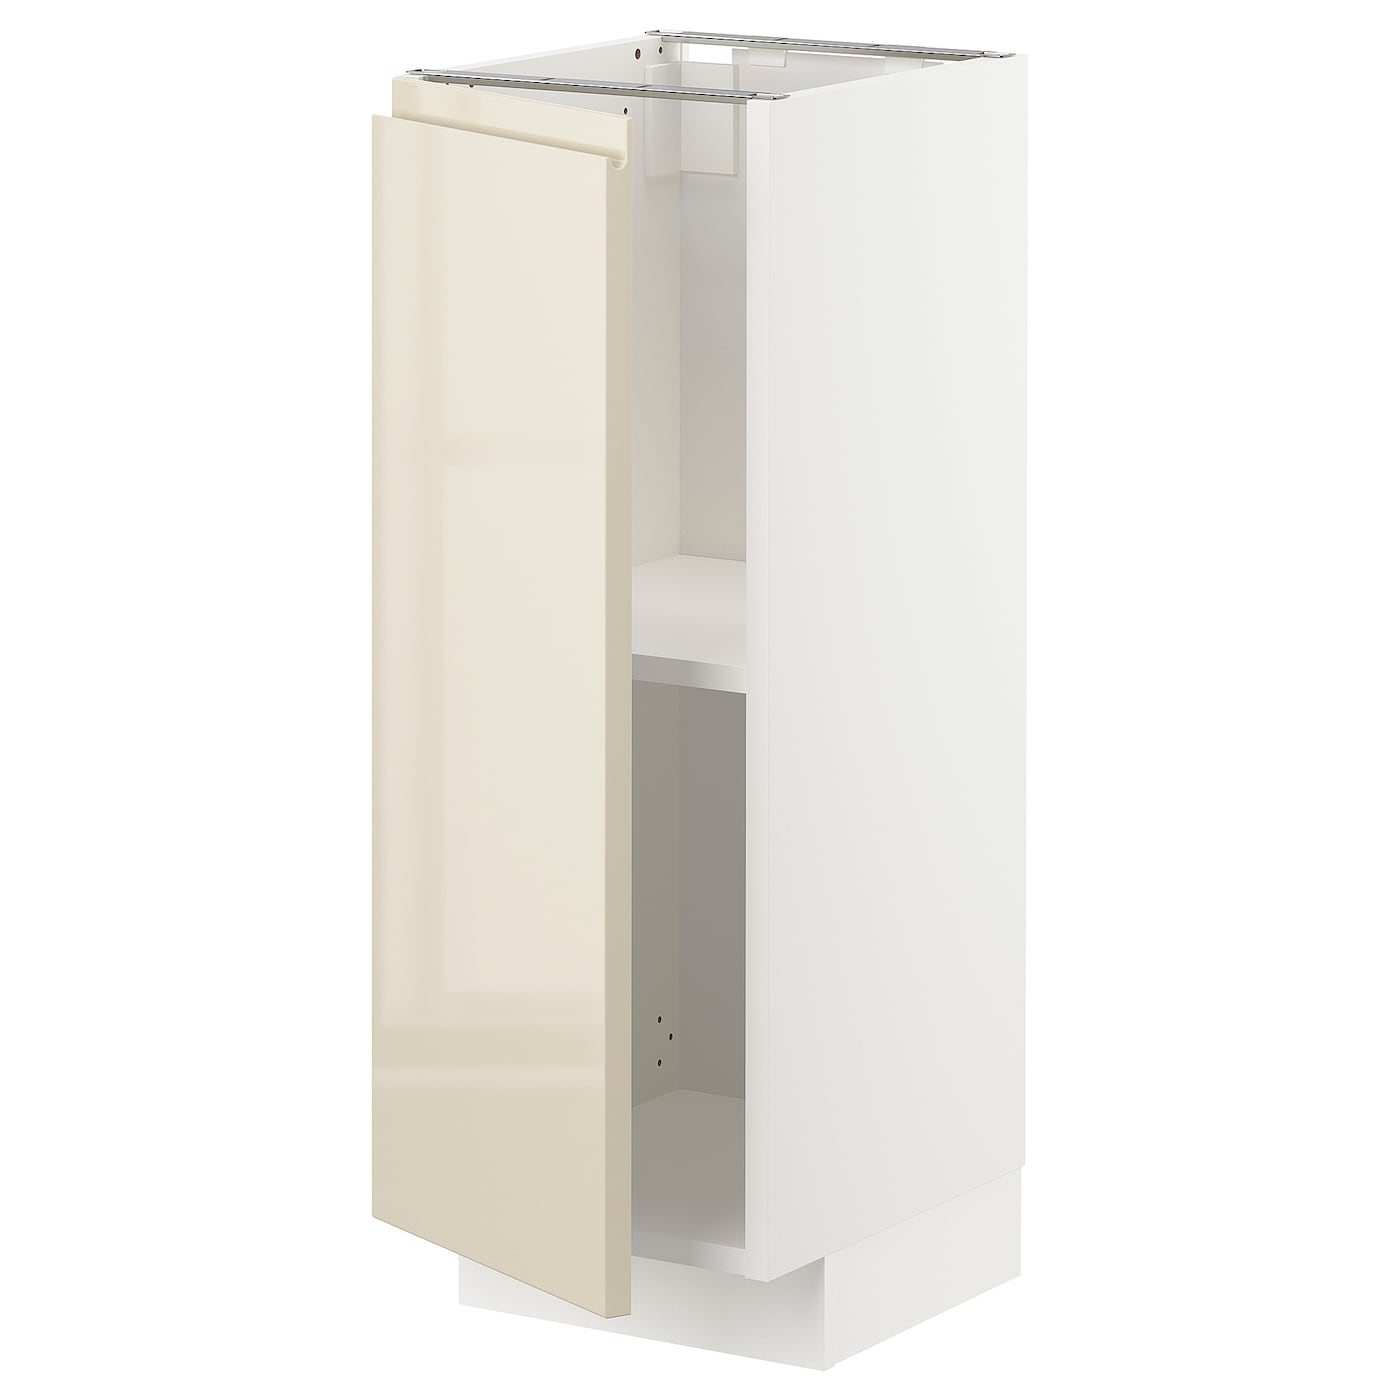 Напольный шкаф - IKEA METOD, 88x39x30см, белый/светло-бежевый, МЕТОД ИКЕА